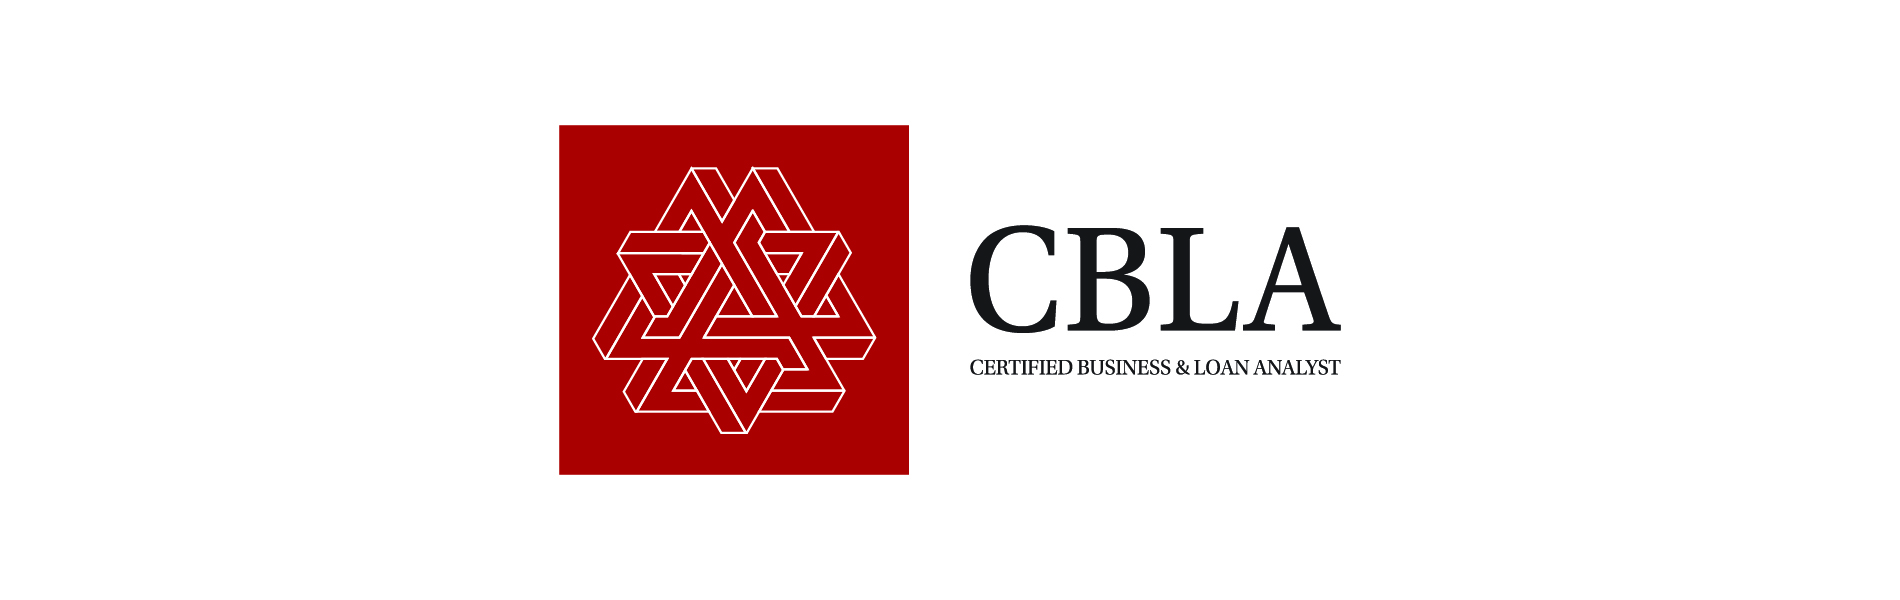 CBLA təlimi, CBLA sertifikatı